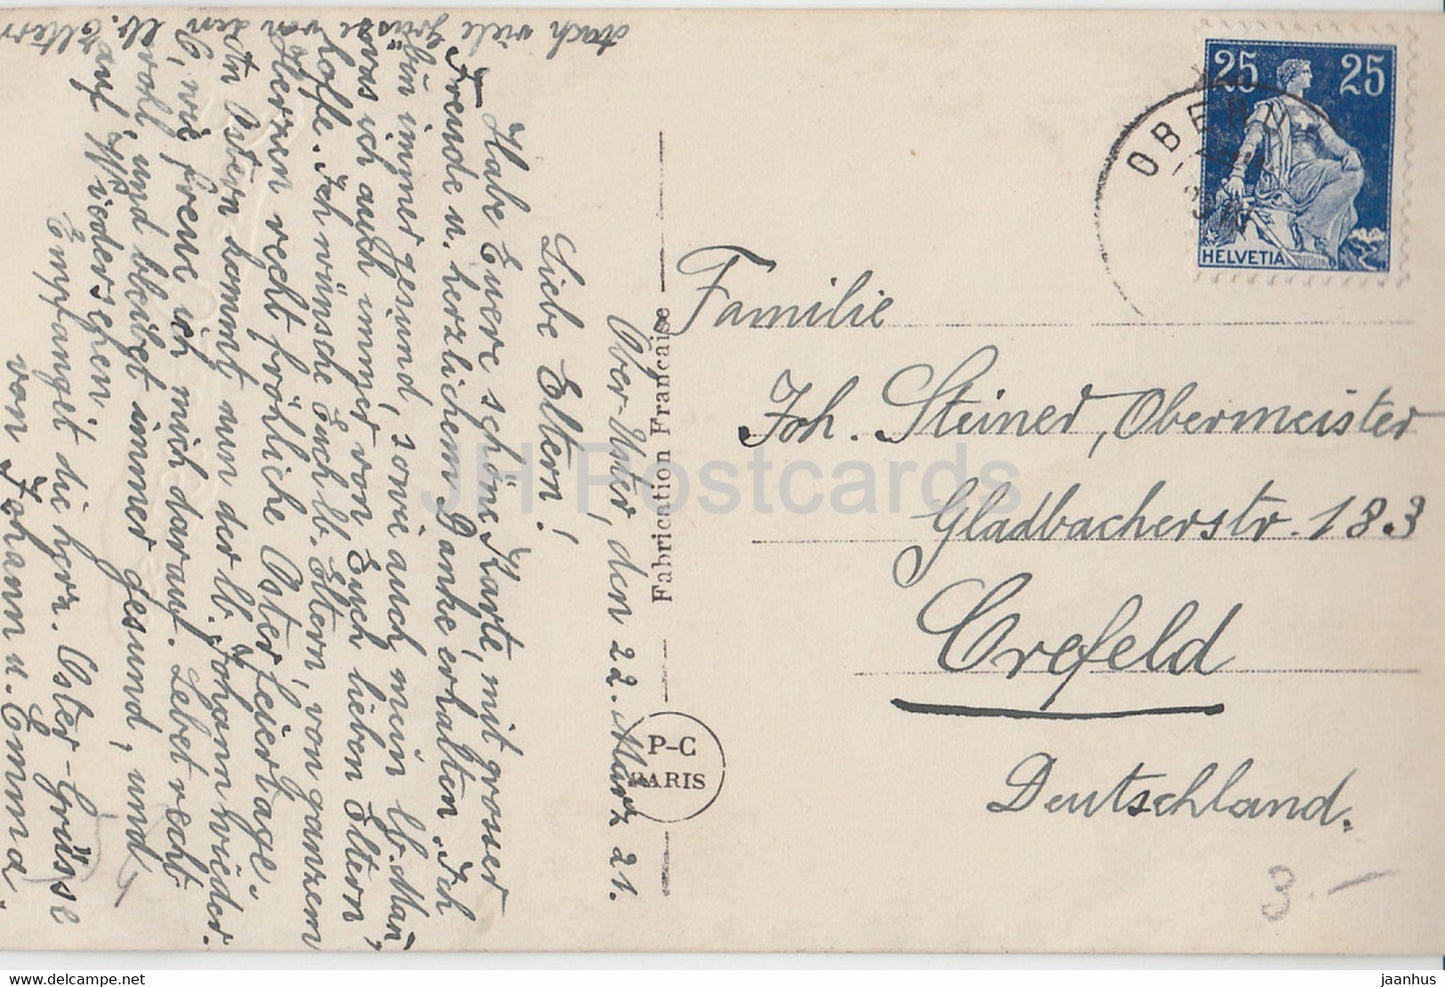 Carte de voeux de Pâques - Beste Osterngrusse - fille - poulet - PC Paris 385 - carte postale ancienne - 1921 - France - occasion